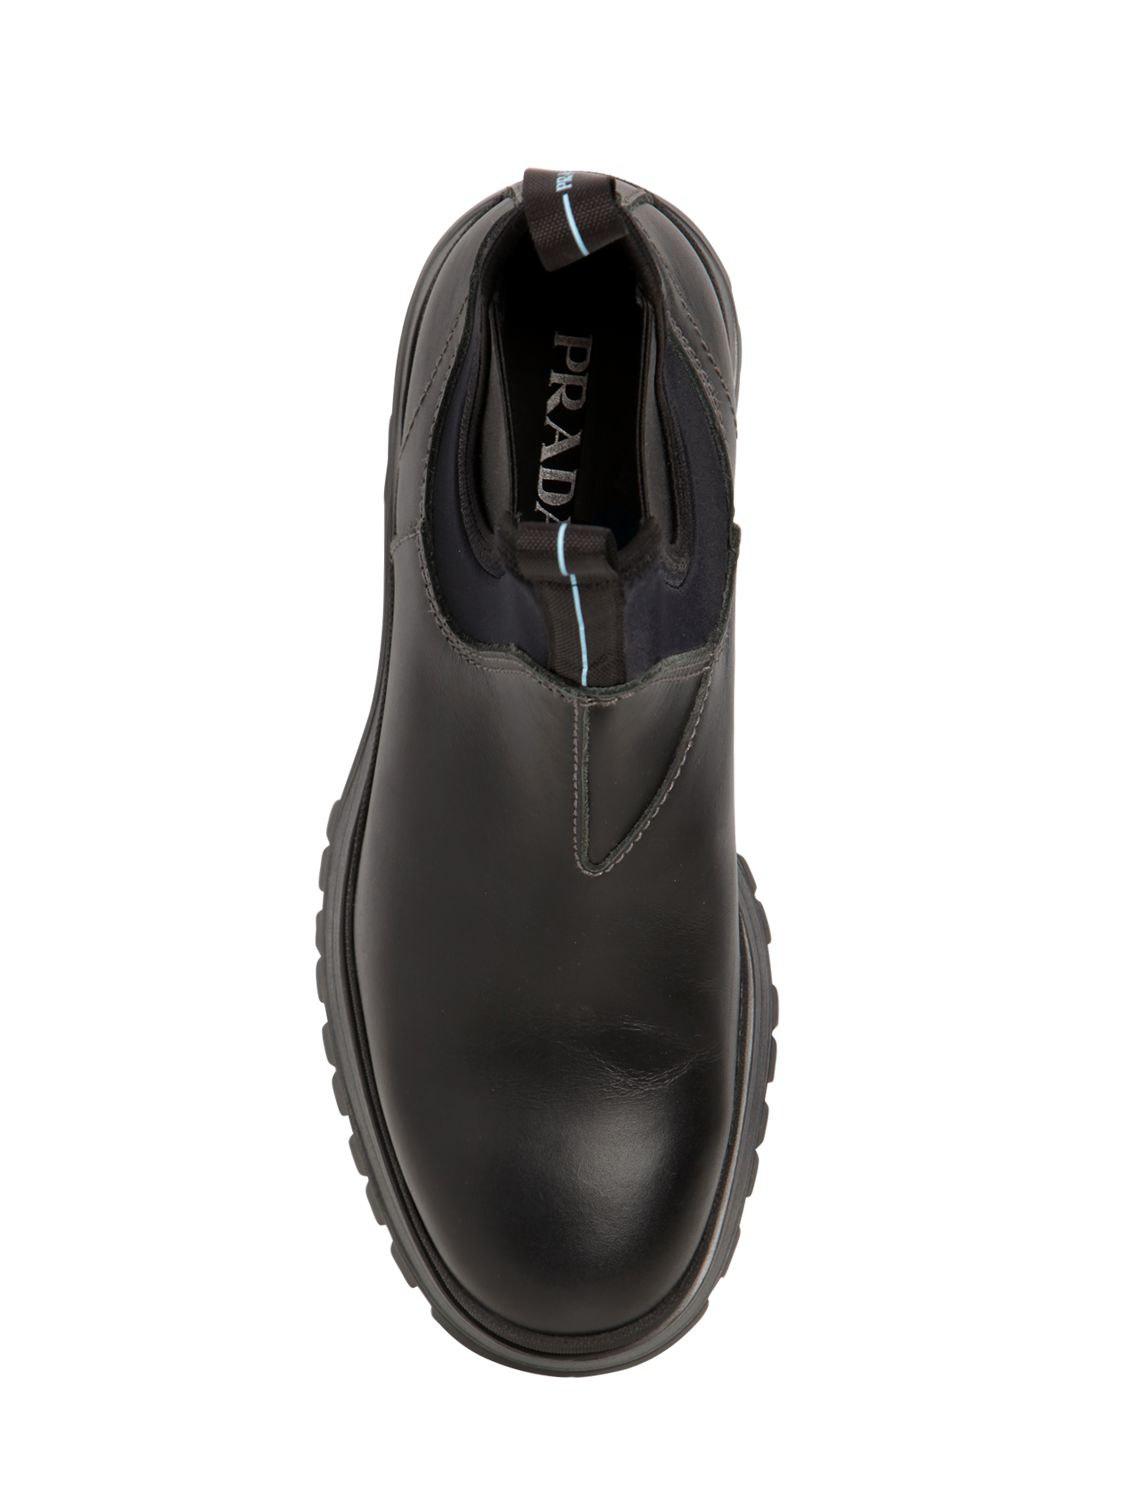 Prada Rodeo Neoprene Chelsea Boots In Black for Men - Lyst